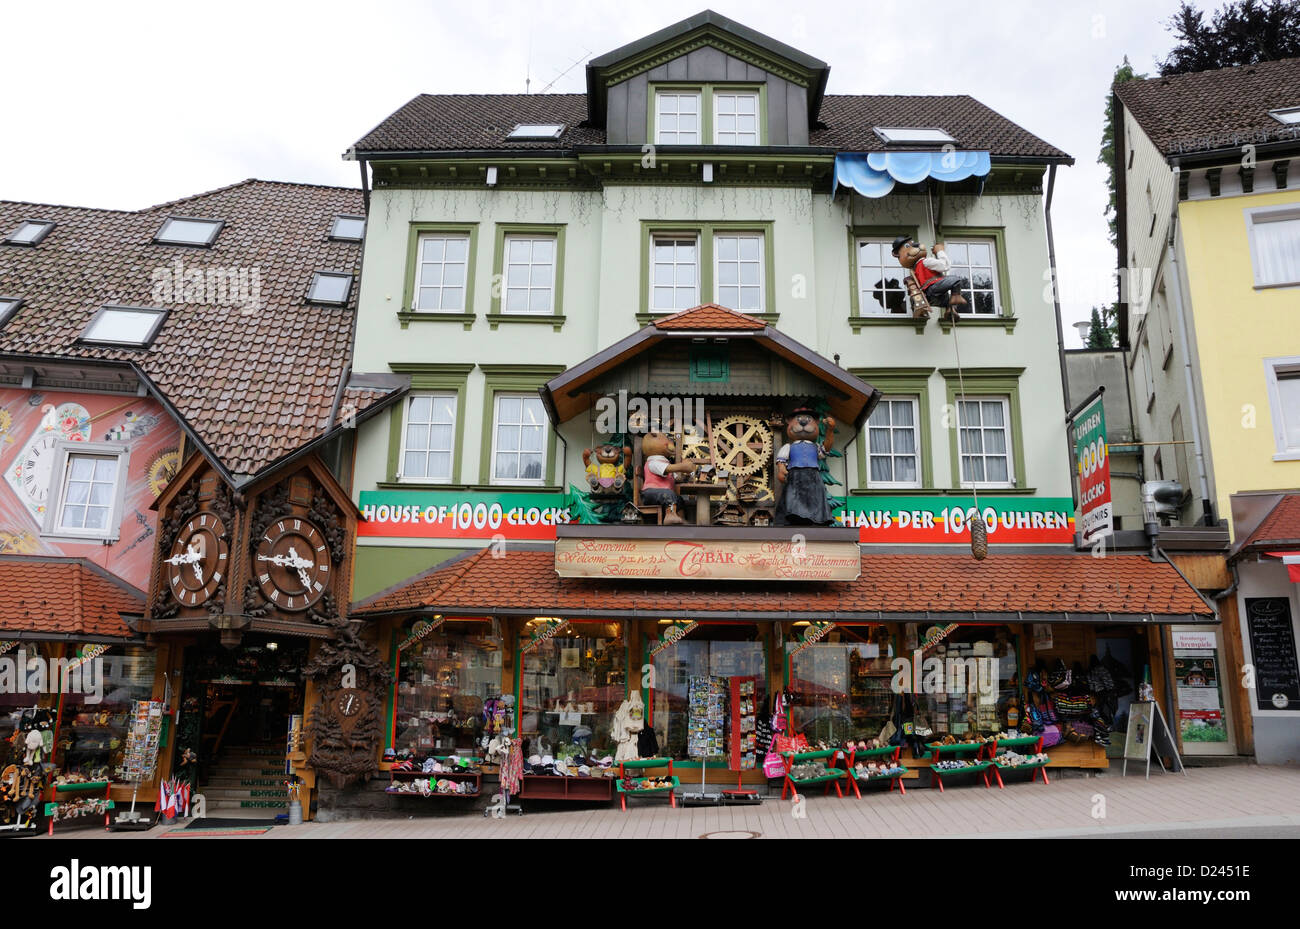 Haus der 1000 Uhren Triberg, Schwarzwald, Deutschland Stockfotografie -  Alamy